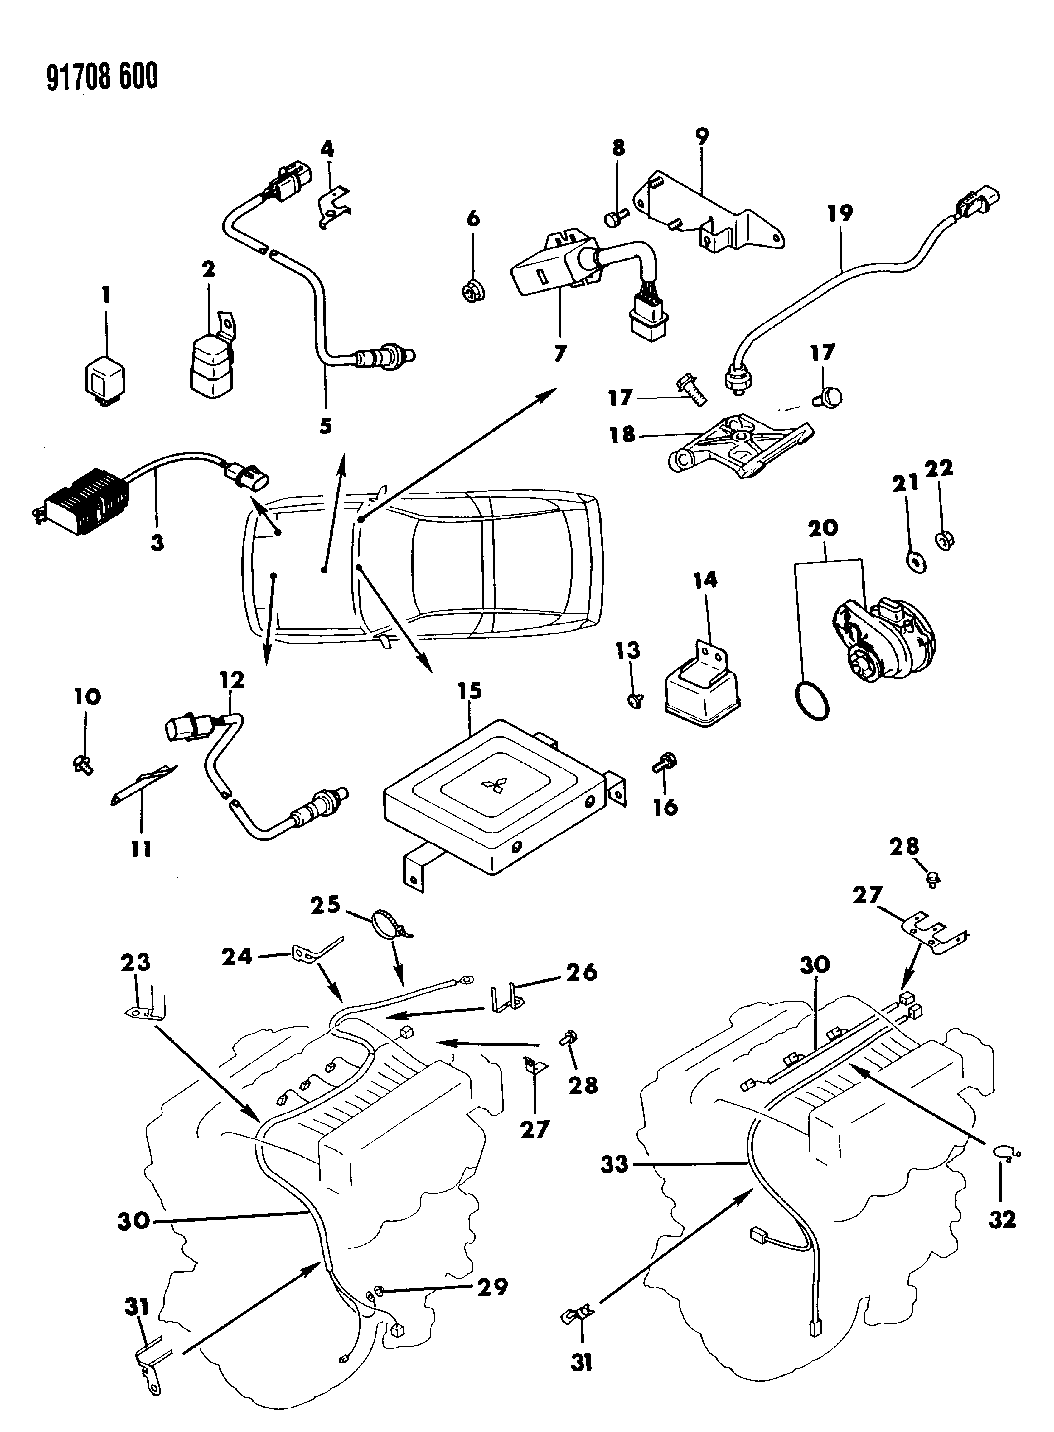 1991 Dodge Stealth Wiring Diagram - Wiring Diagram Schema